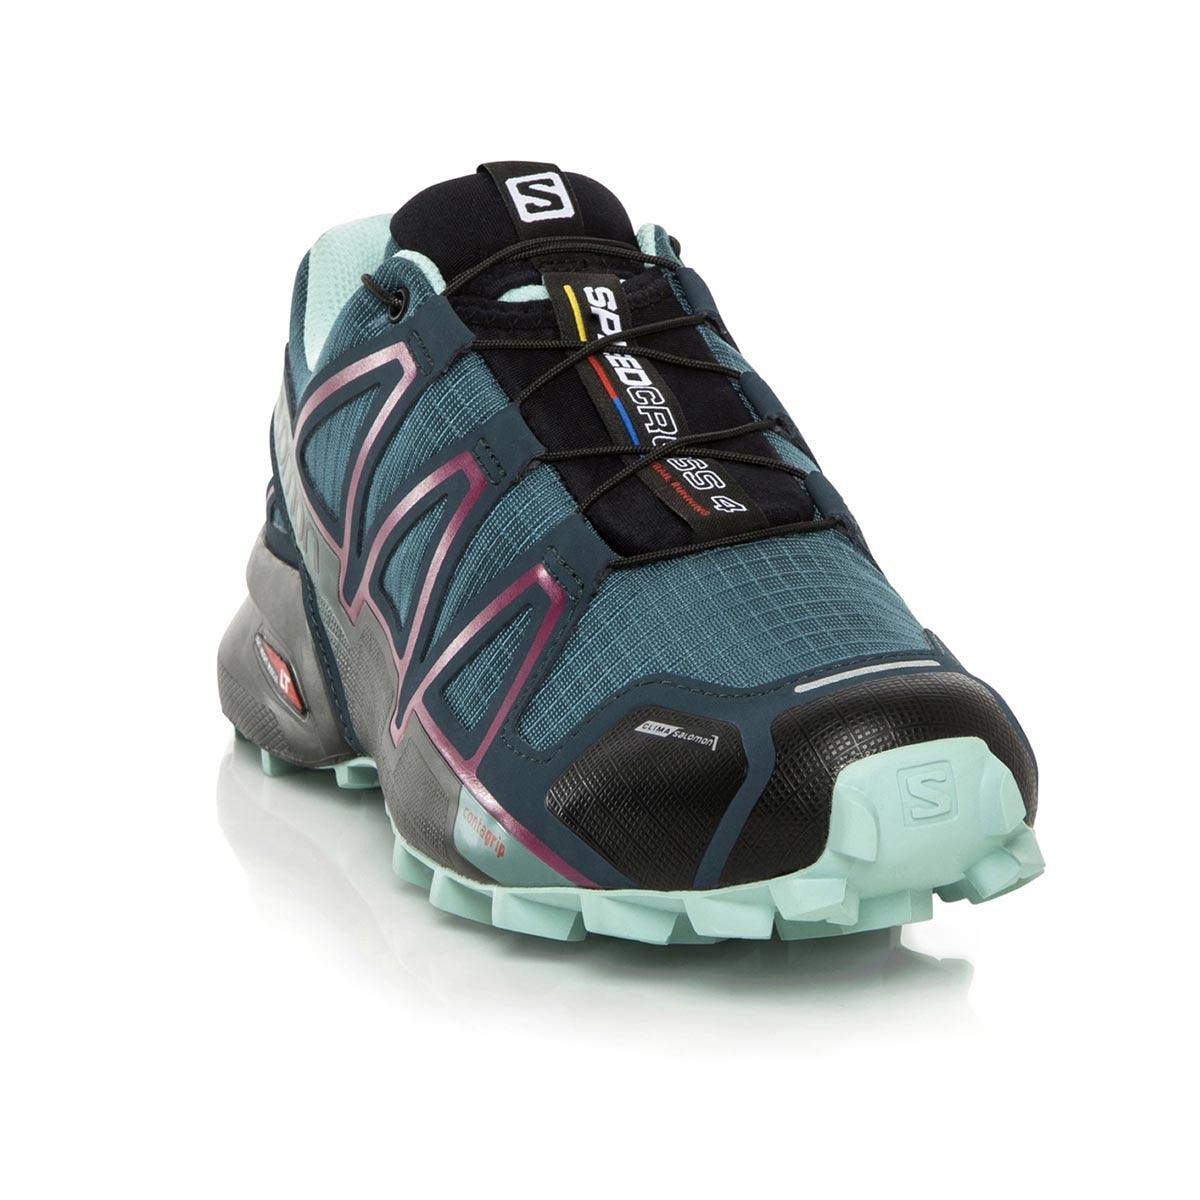 Speedcross 4 GTX Trail-Running Shoes - Women's